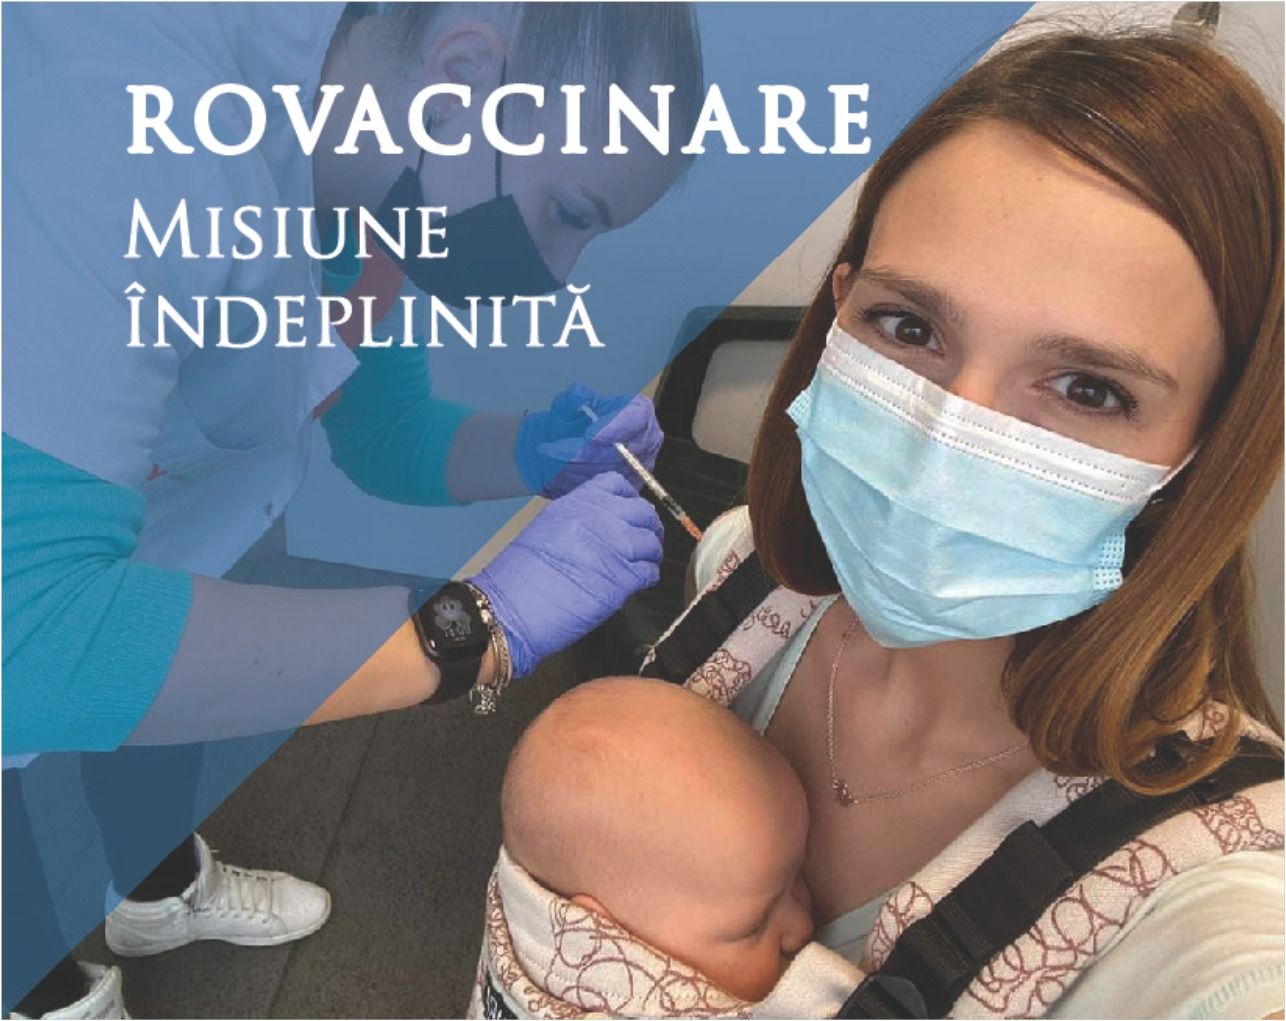 Pagina de Facebook RO Vaccinare își încheie misiunea